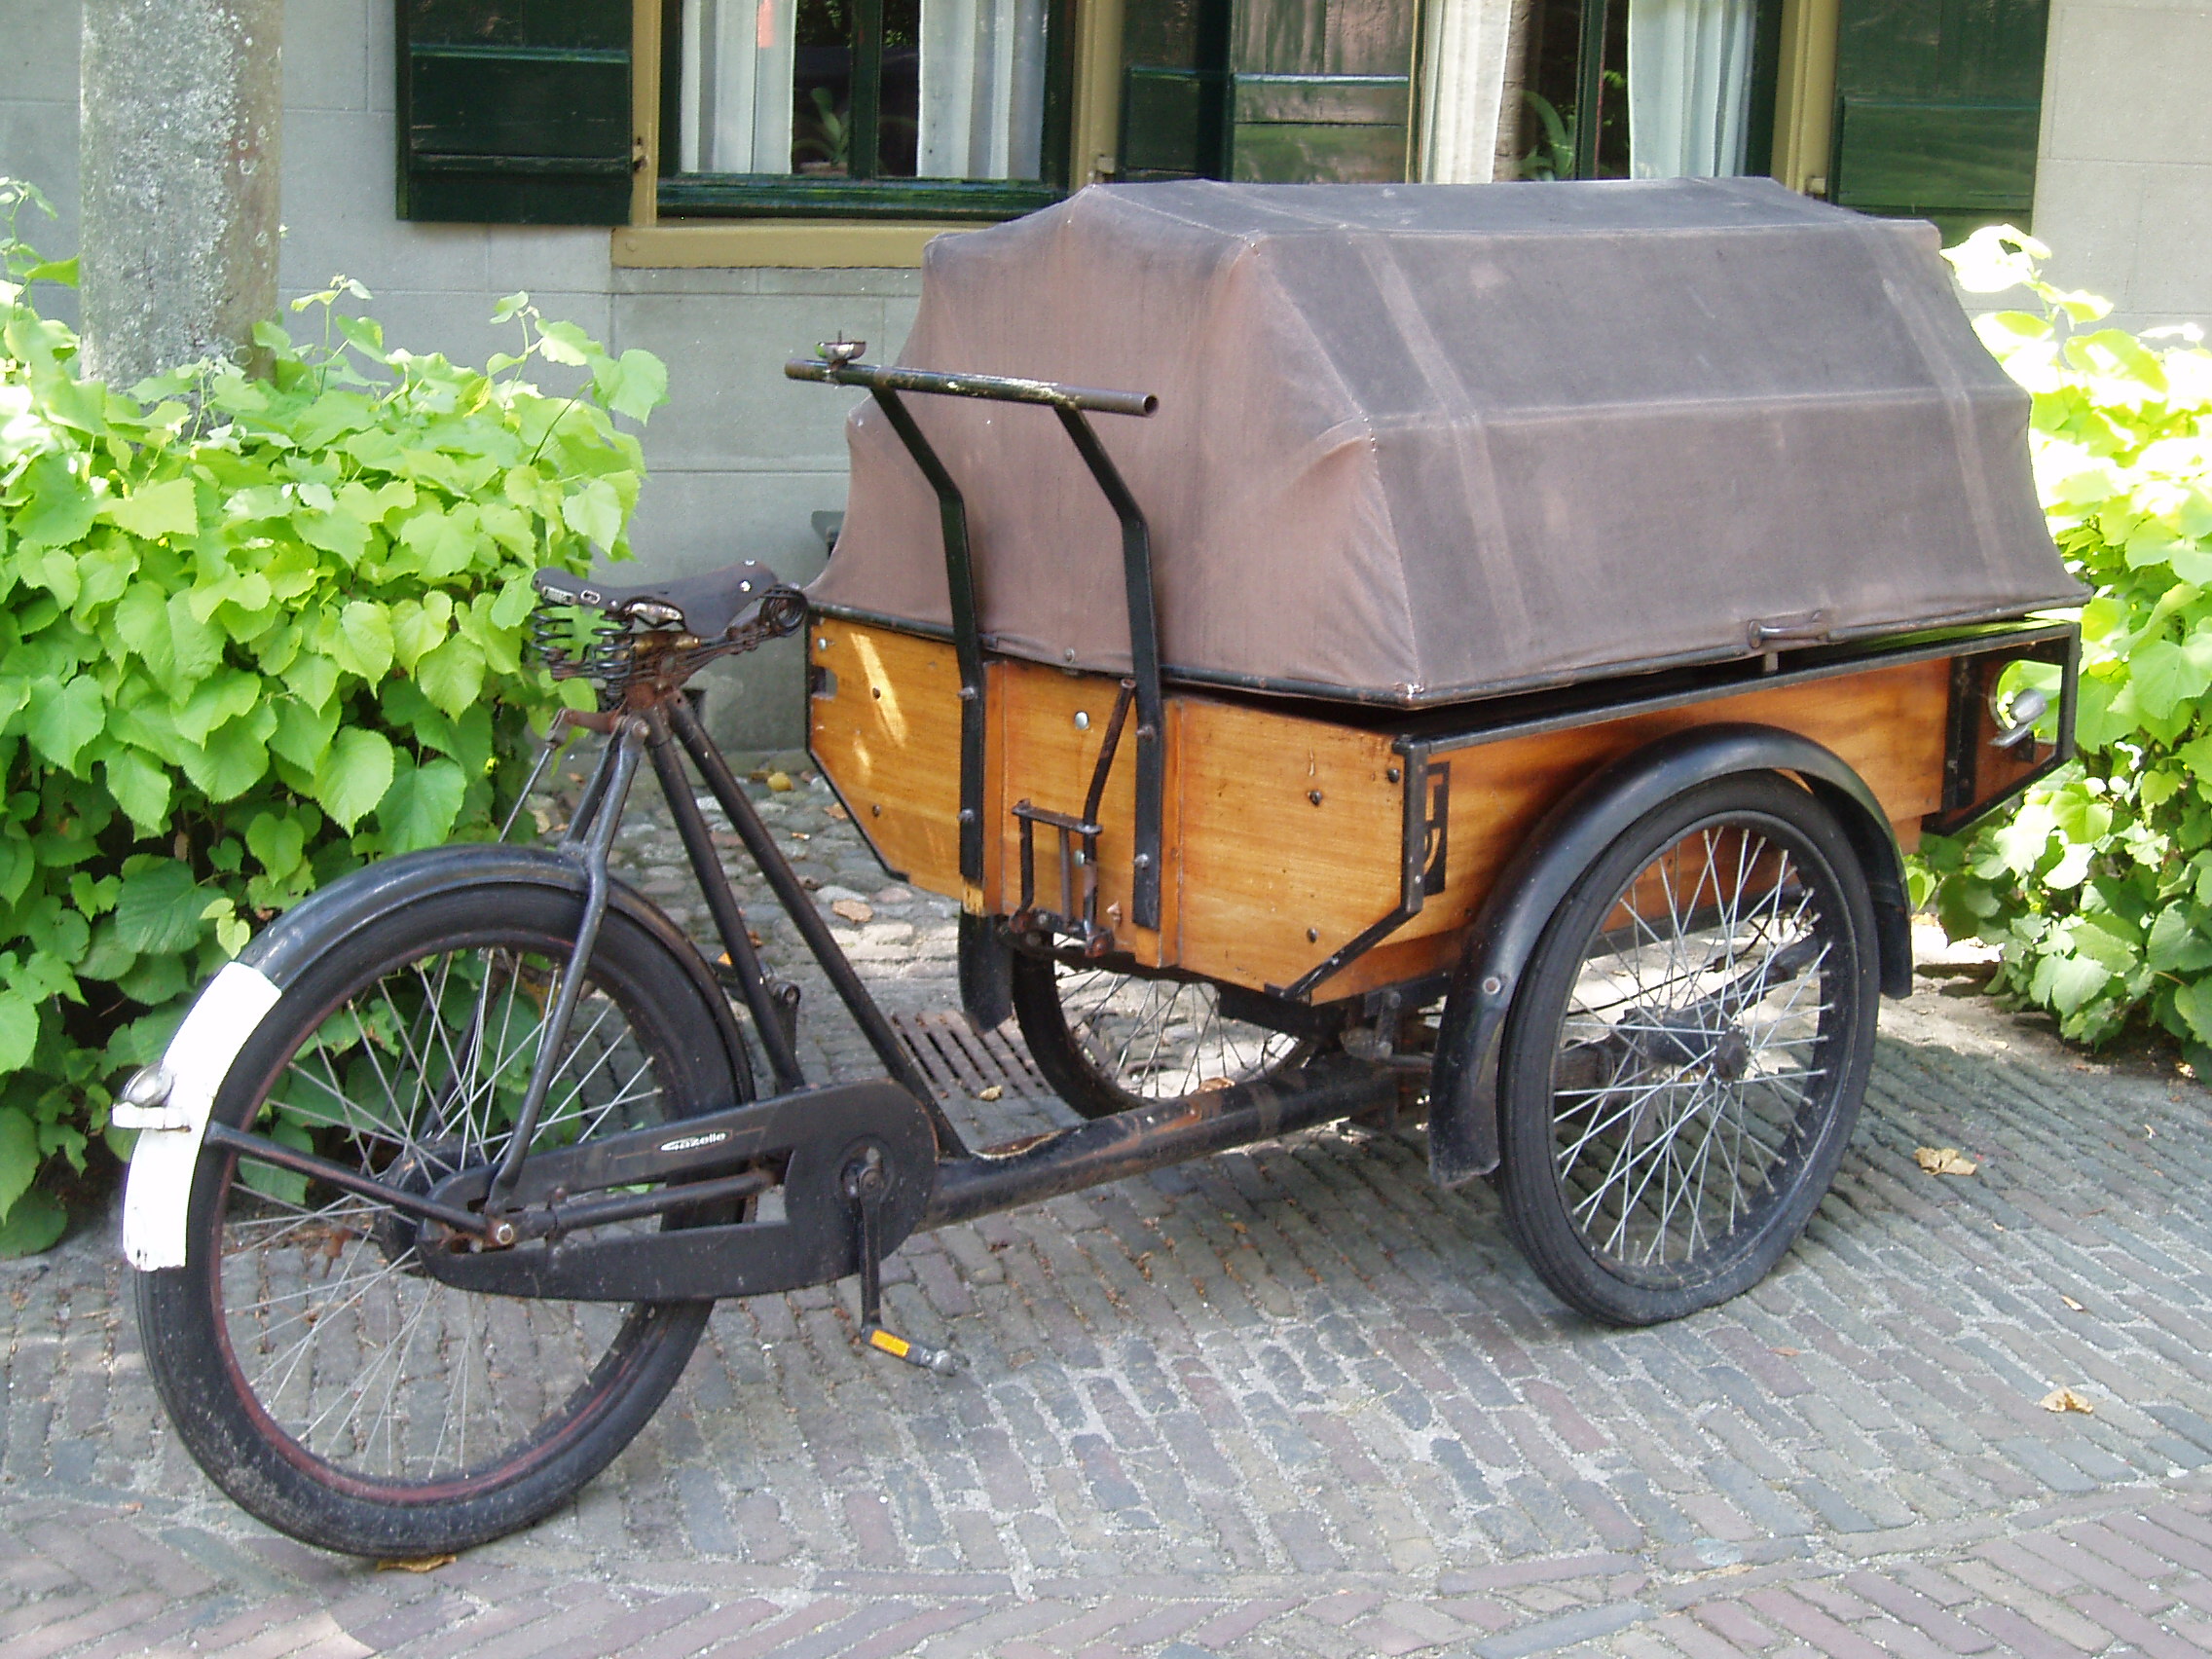 Bicycle in Zuiderzeemuseum